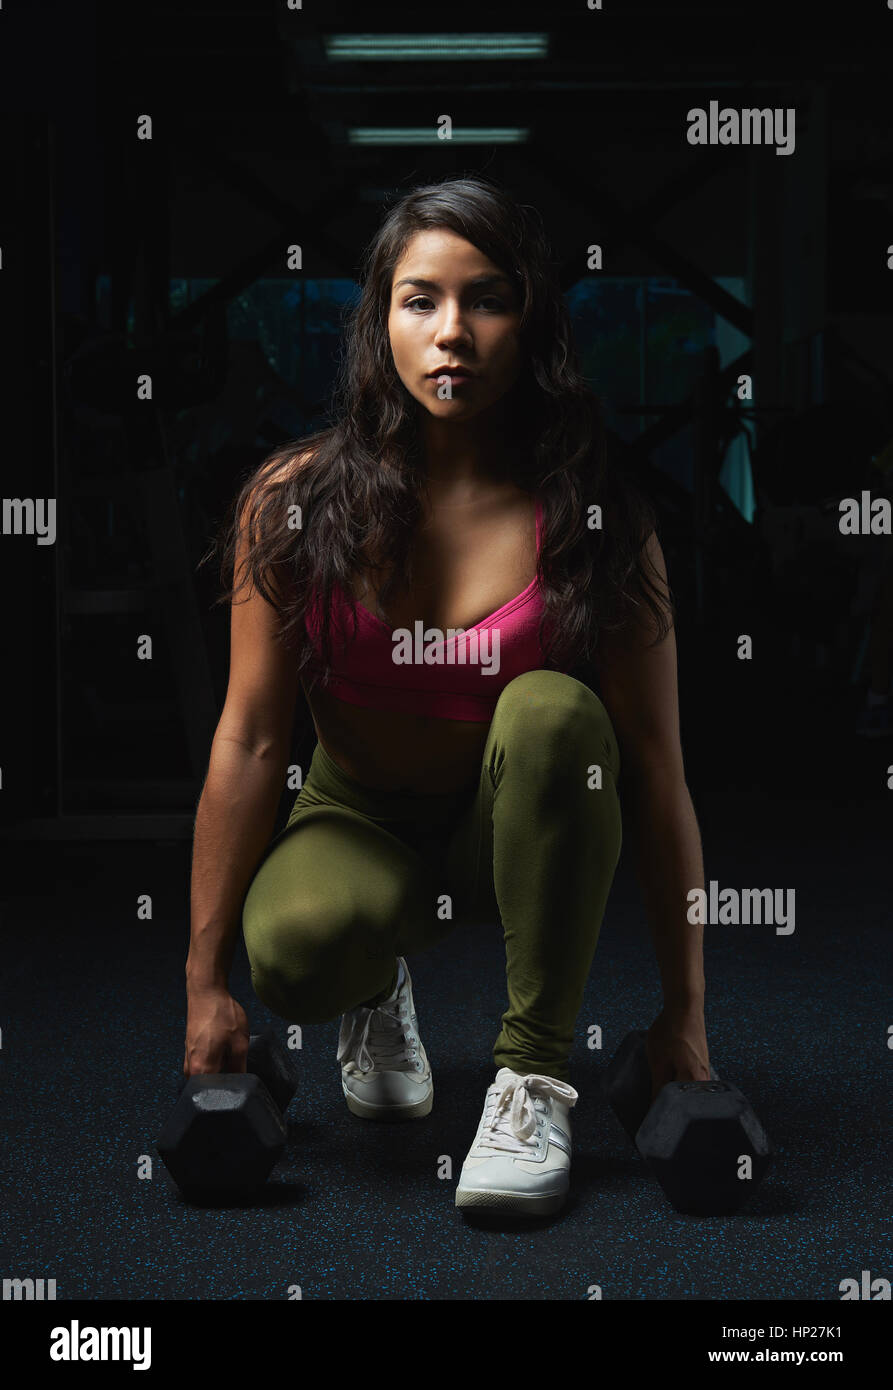 junge lateinamerikanische Frau sitzt mit Hanteln auf Fitness dunkle Turnhalle Hintergrund Stockfoto